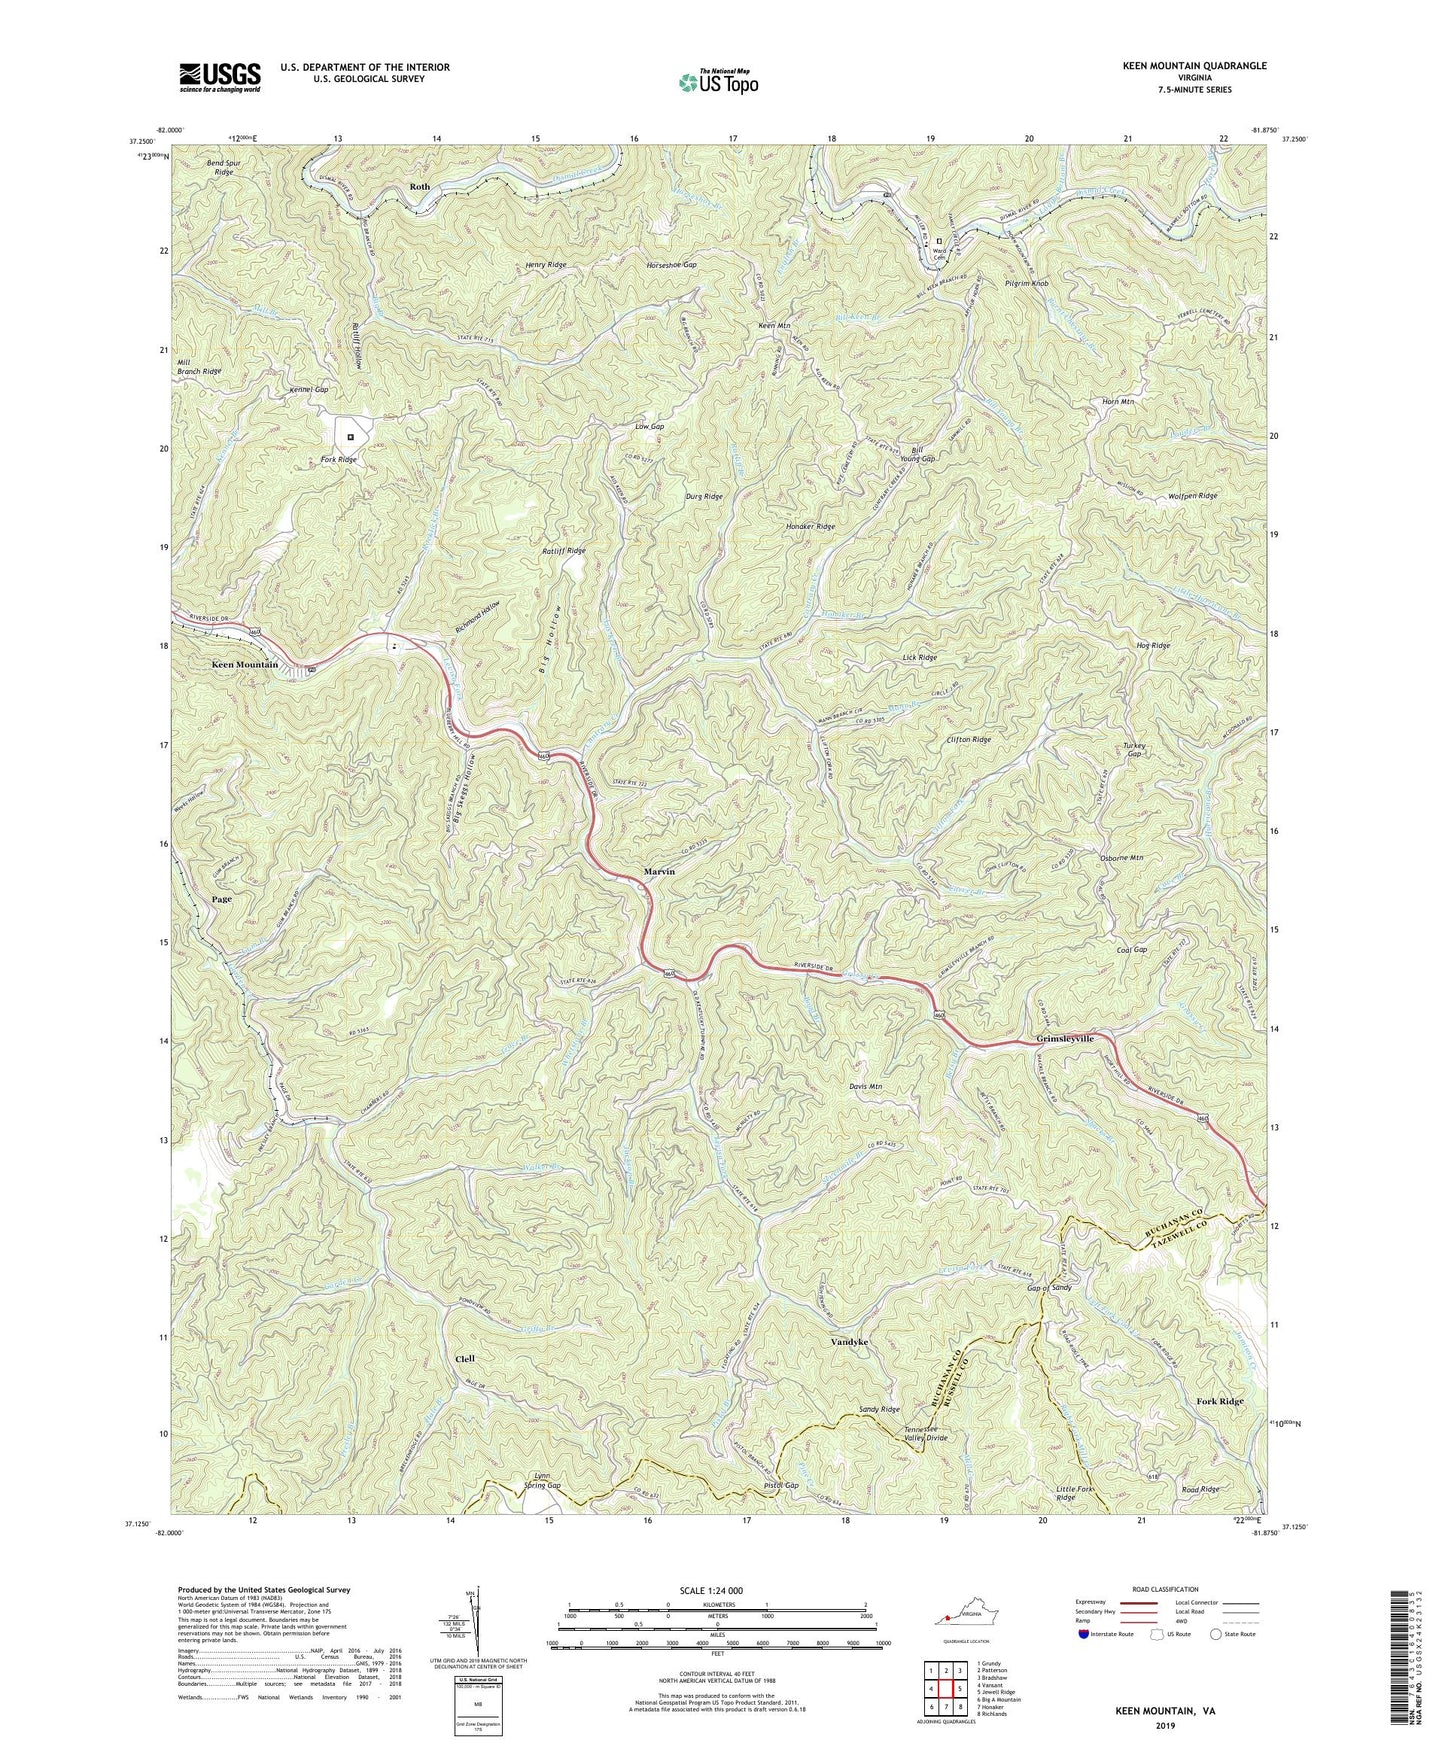 Keen Mountain Virginia US Topo Map Image